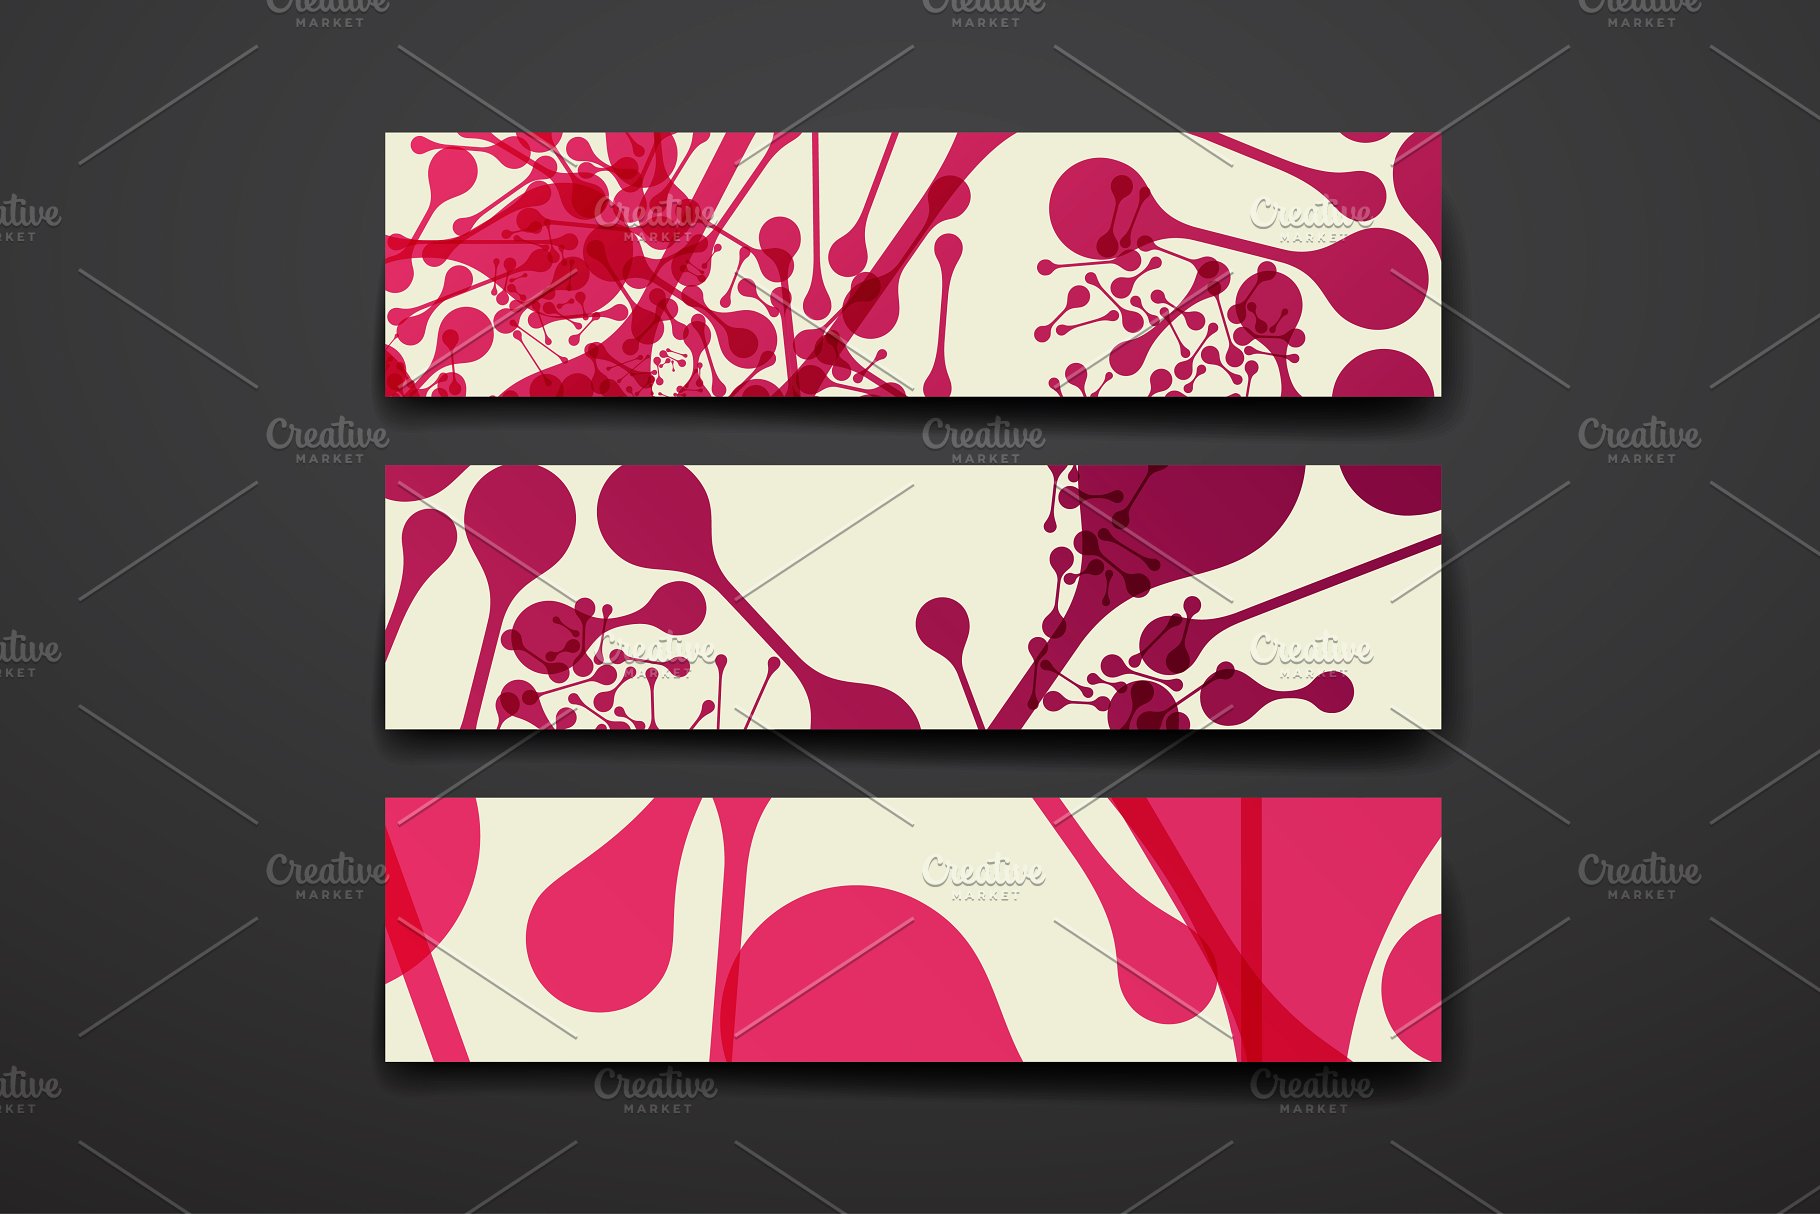 抽象几何图案背景纹理素材 Abstract Templates and Backgrounds插图(7)